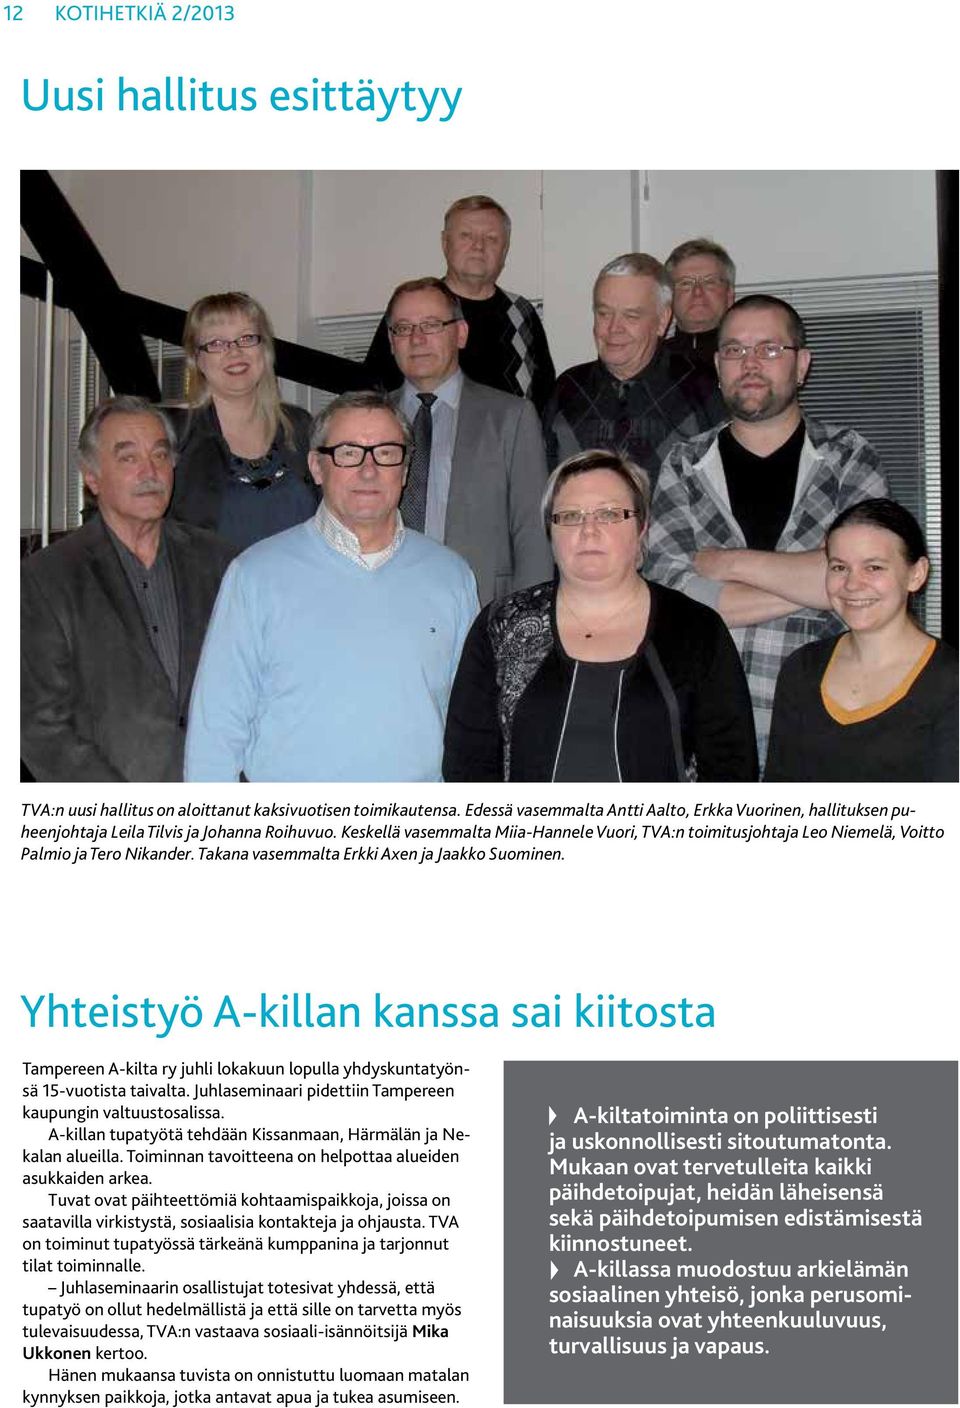 Keskellä vasemmalta Miia-Hannele Vuori, TVA:n toimitusjohtaja Leo Niemelä, Voitto Palmio ja Tero Nikander. Takana vasemmalta Erkki Axen ja Jaakko Suominen.